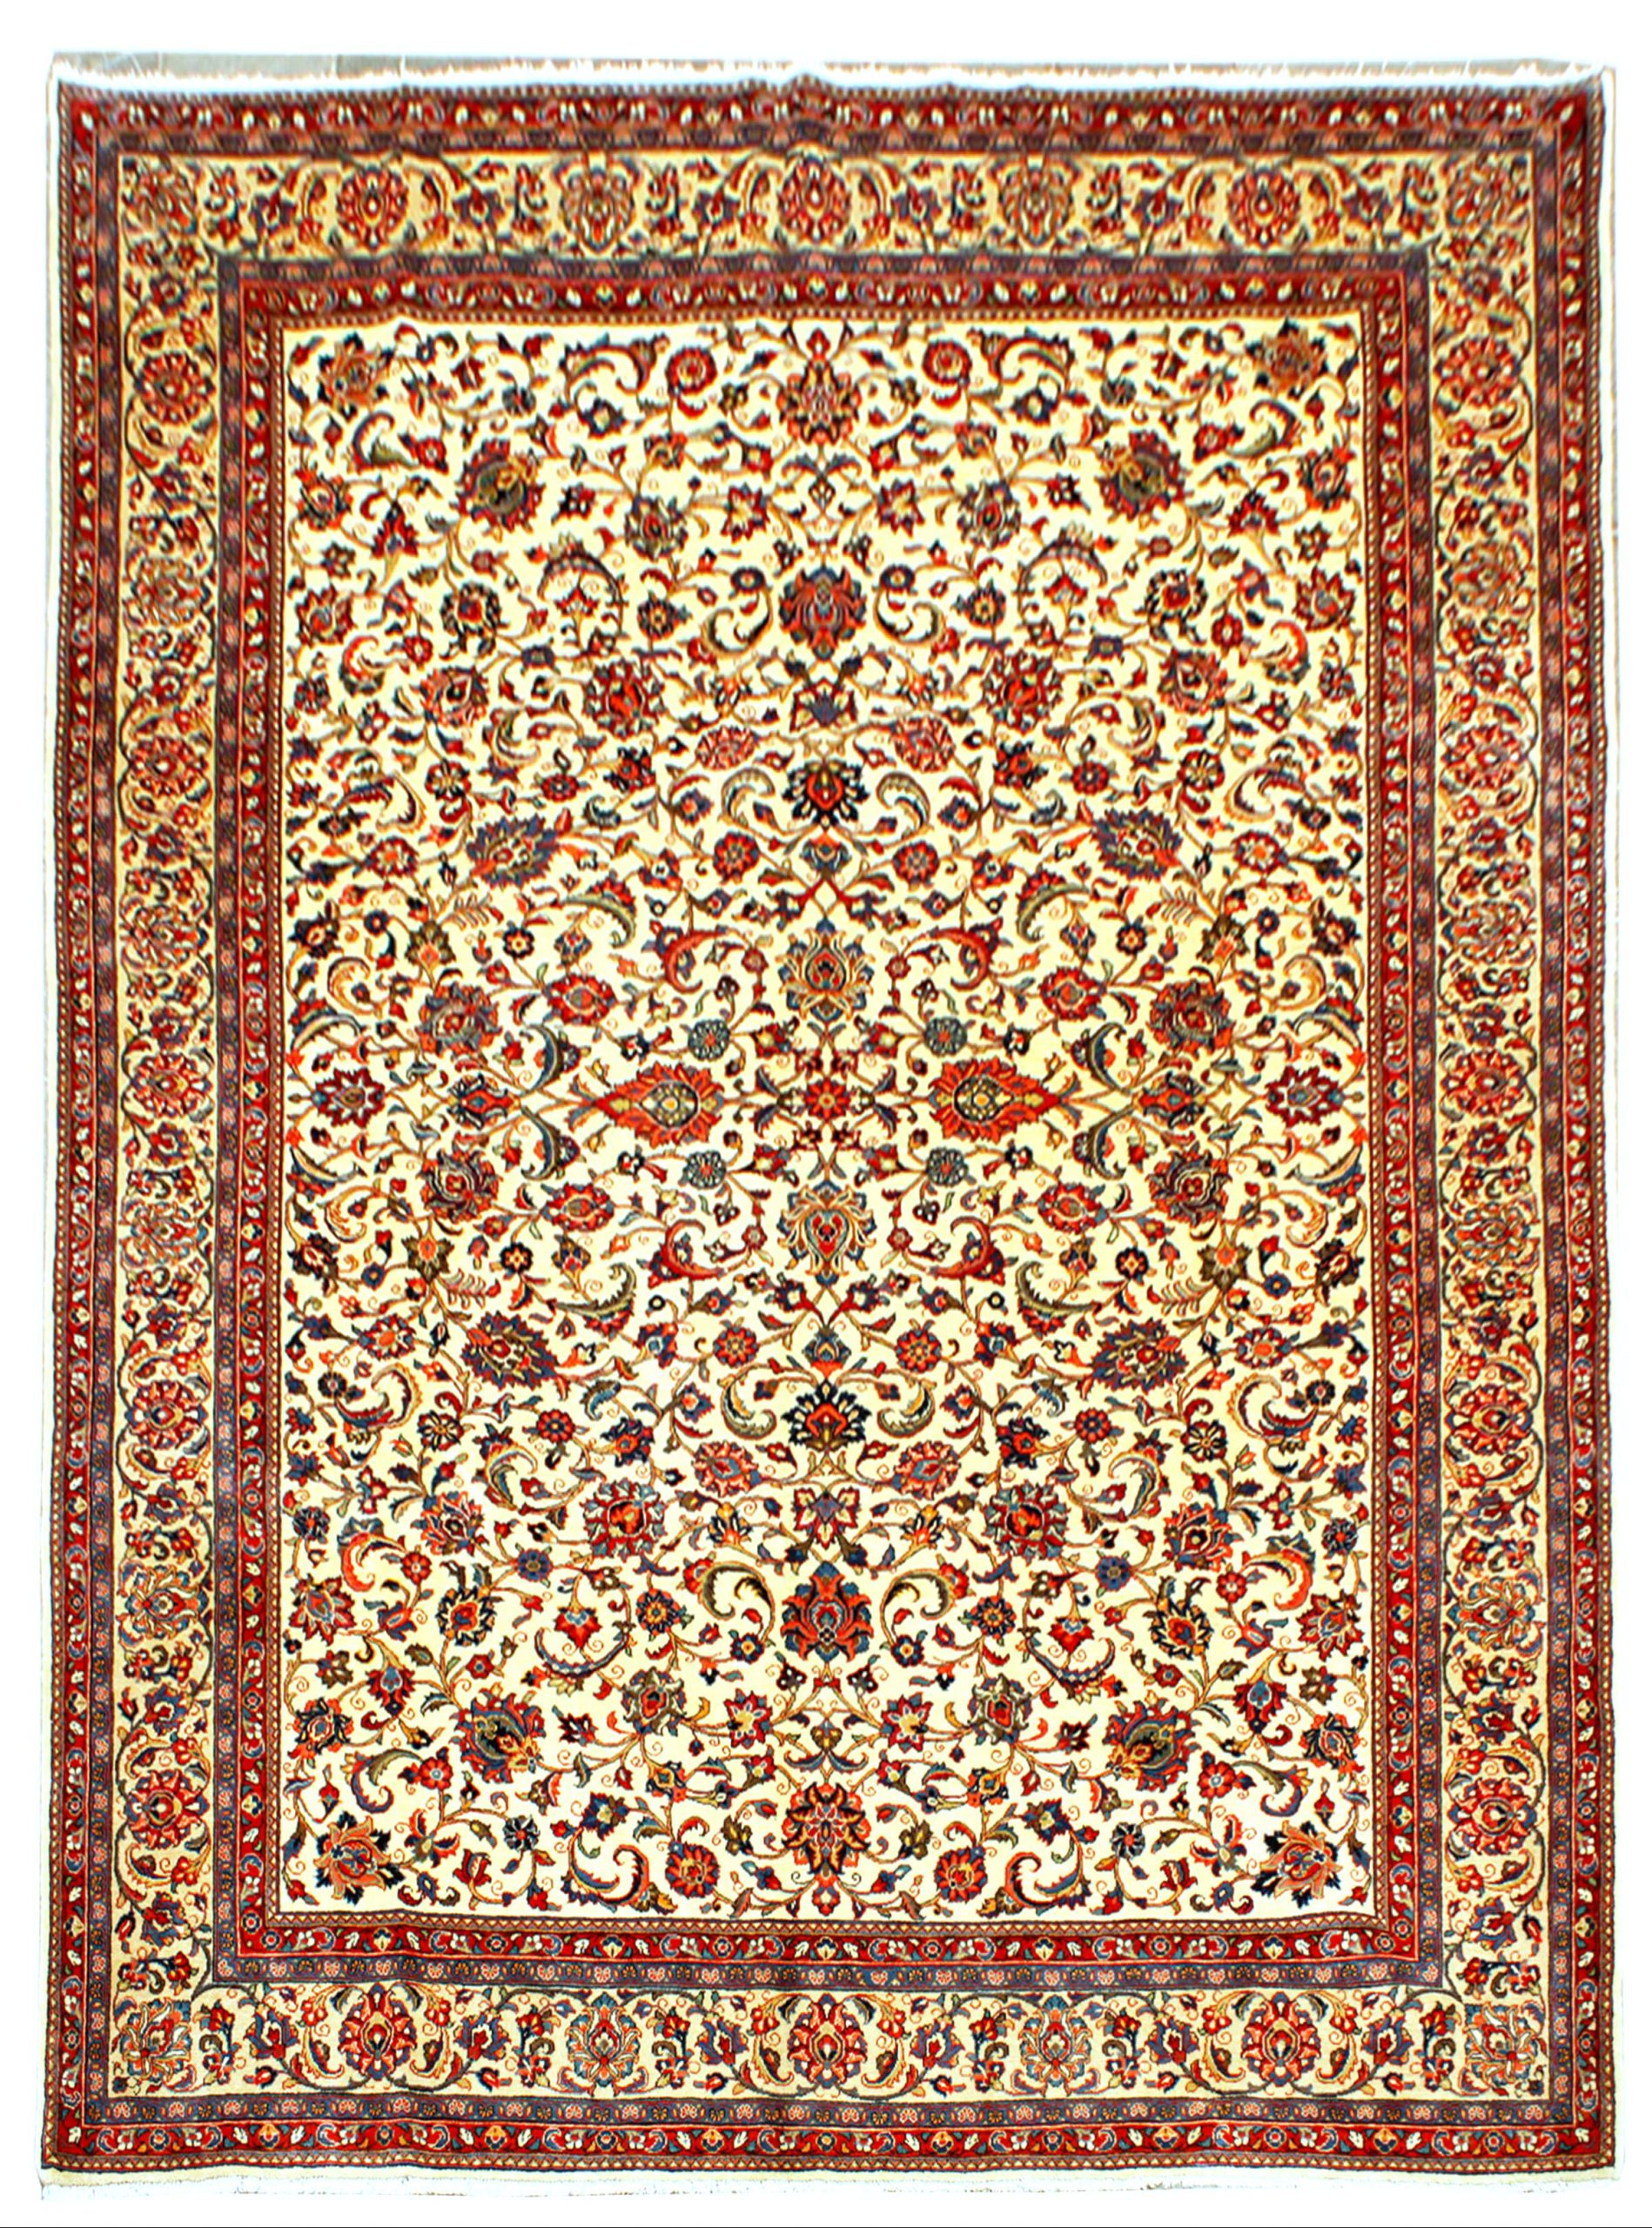 فرش دستباف آنتیک ساروق ۶۰ ساله تولید شرکت فرش طرح افشان سایز قالي۳٫۶×۲٫۶۷ رنگ زمینه كرم رنگ حاشیه بژ / خاکي کد ۴۳۰۴۹